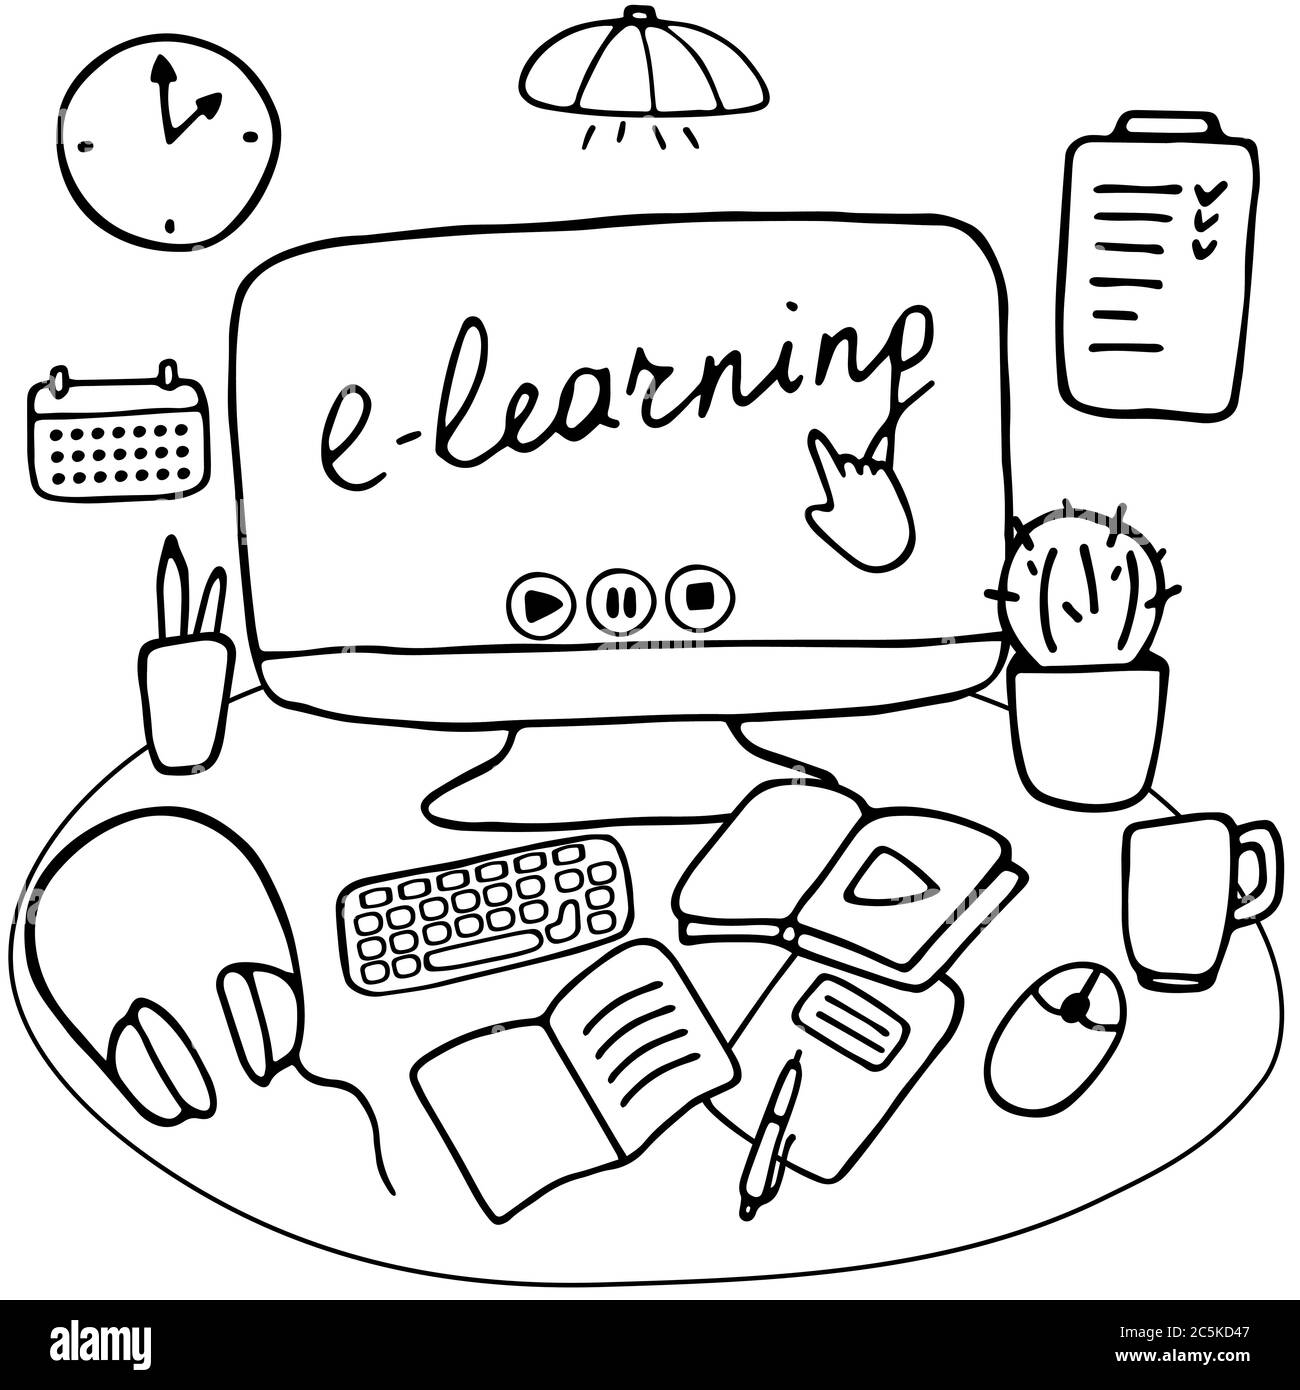 Espacio de trabajo para el aprendizaje en línea y el trabajo remoto. Escritorio con artículos de escritorio y artículos de casa. E-learning, educación en línea, concepto de estancia en casa. Dibujado a mano Ilustración del Vector